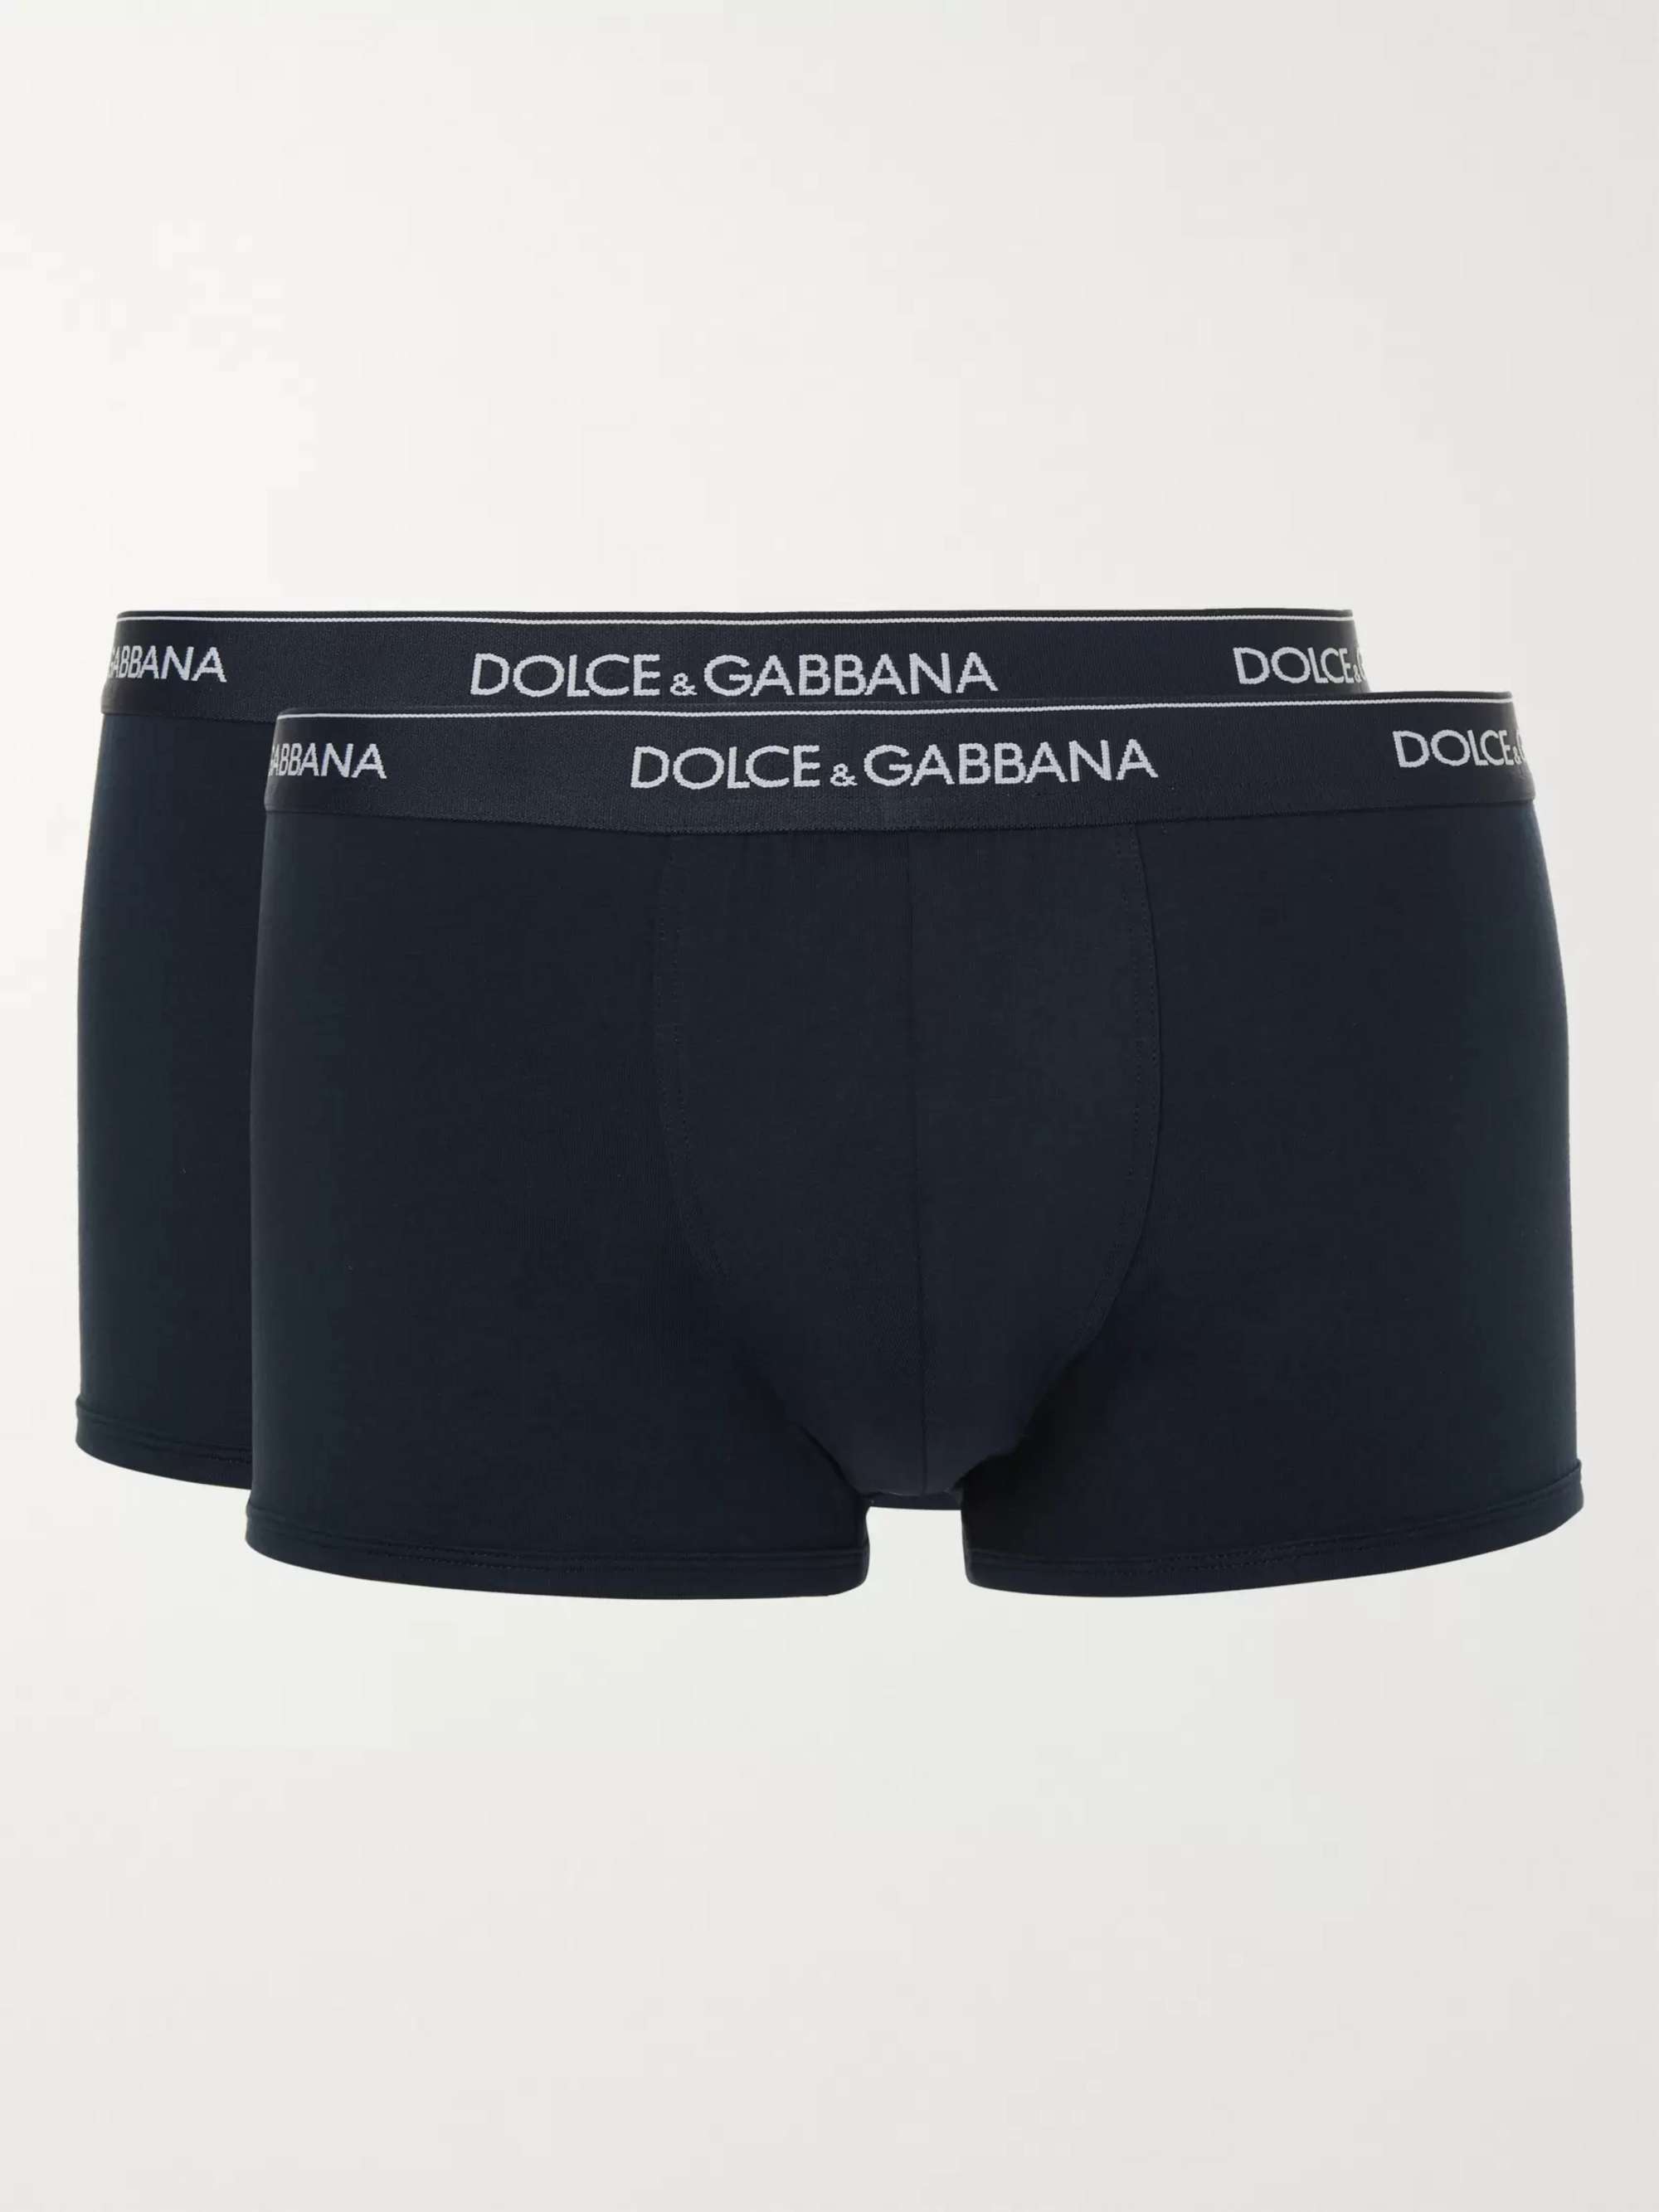 Dolce & Gabbana Sport Crest Stretch Cotton Regular Boxer White